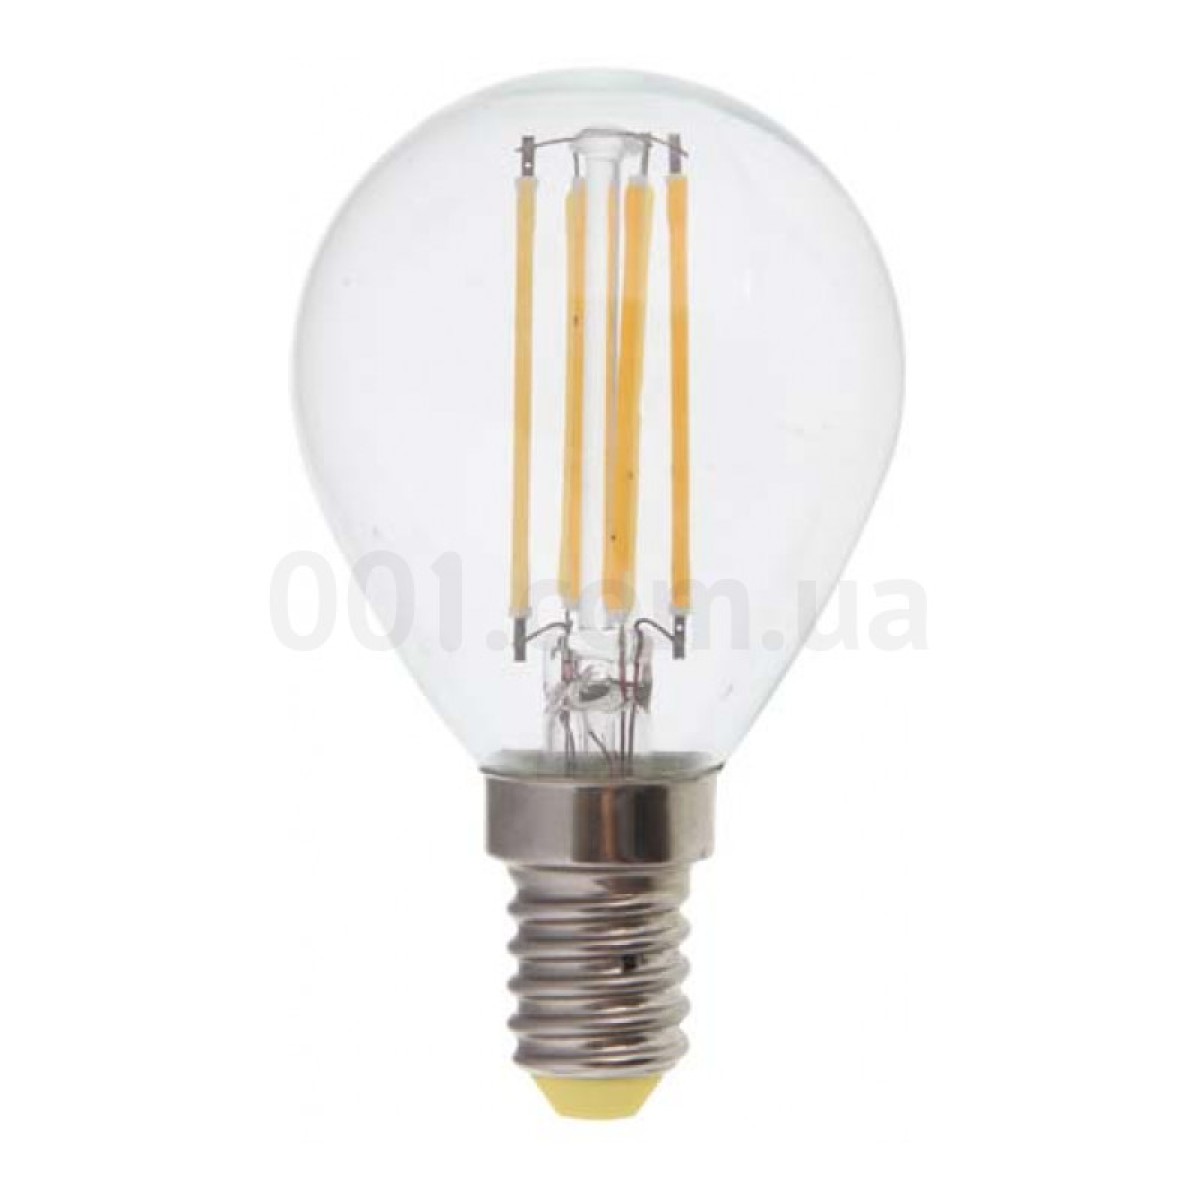 Світлодіодна лампа LB-61 P45 (куля) філамент 4Вт 2700K E14, Feron 98_98.jpg